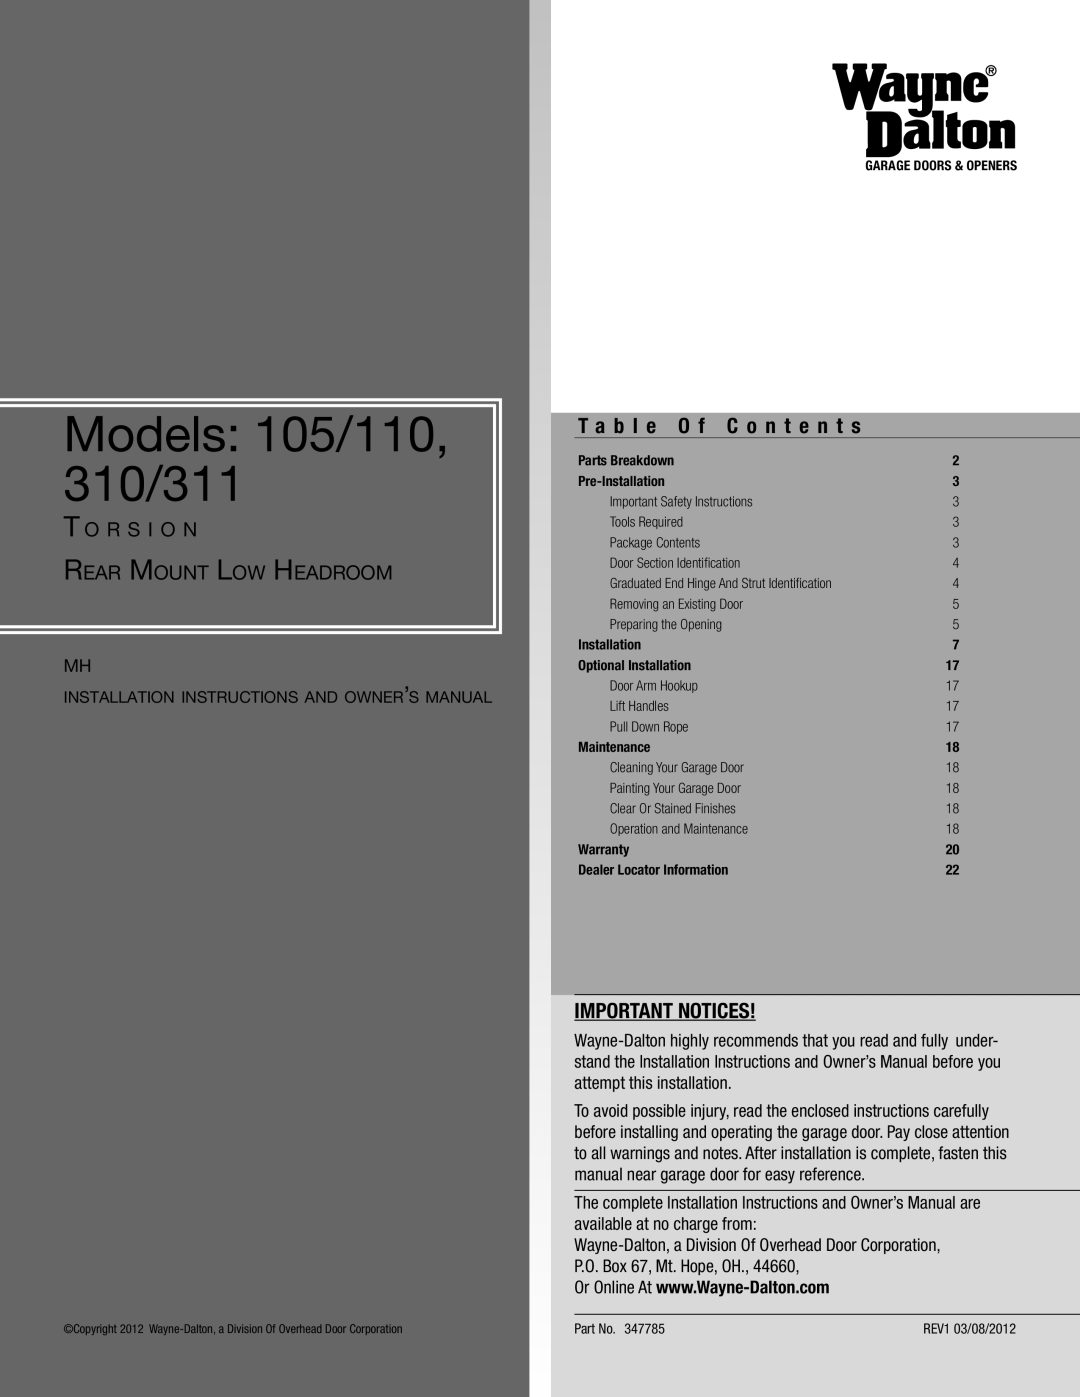 Wayne-Dalton installation instructions T a b l e O f C o n t e n t s, Important Notices, Models 105/110, 310/311 